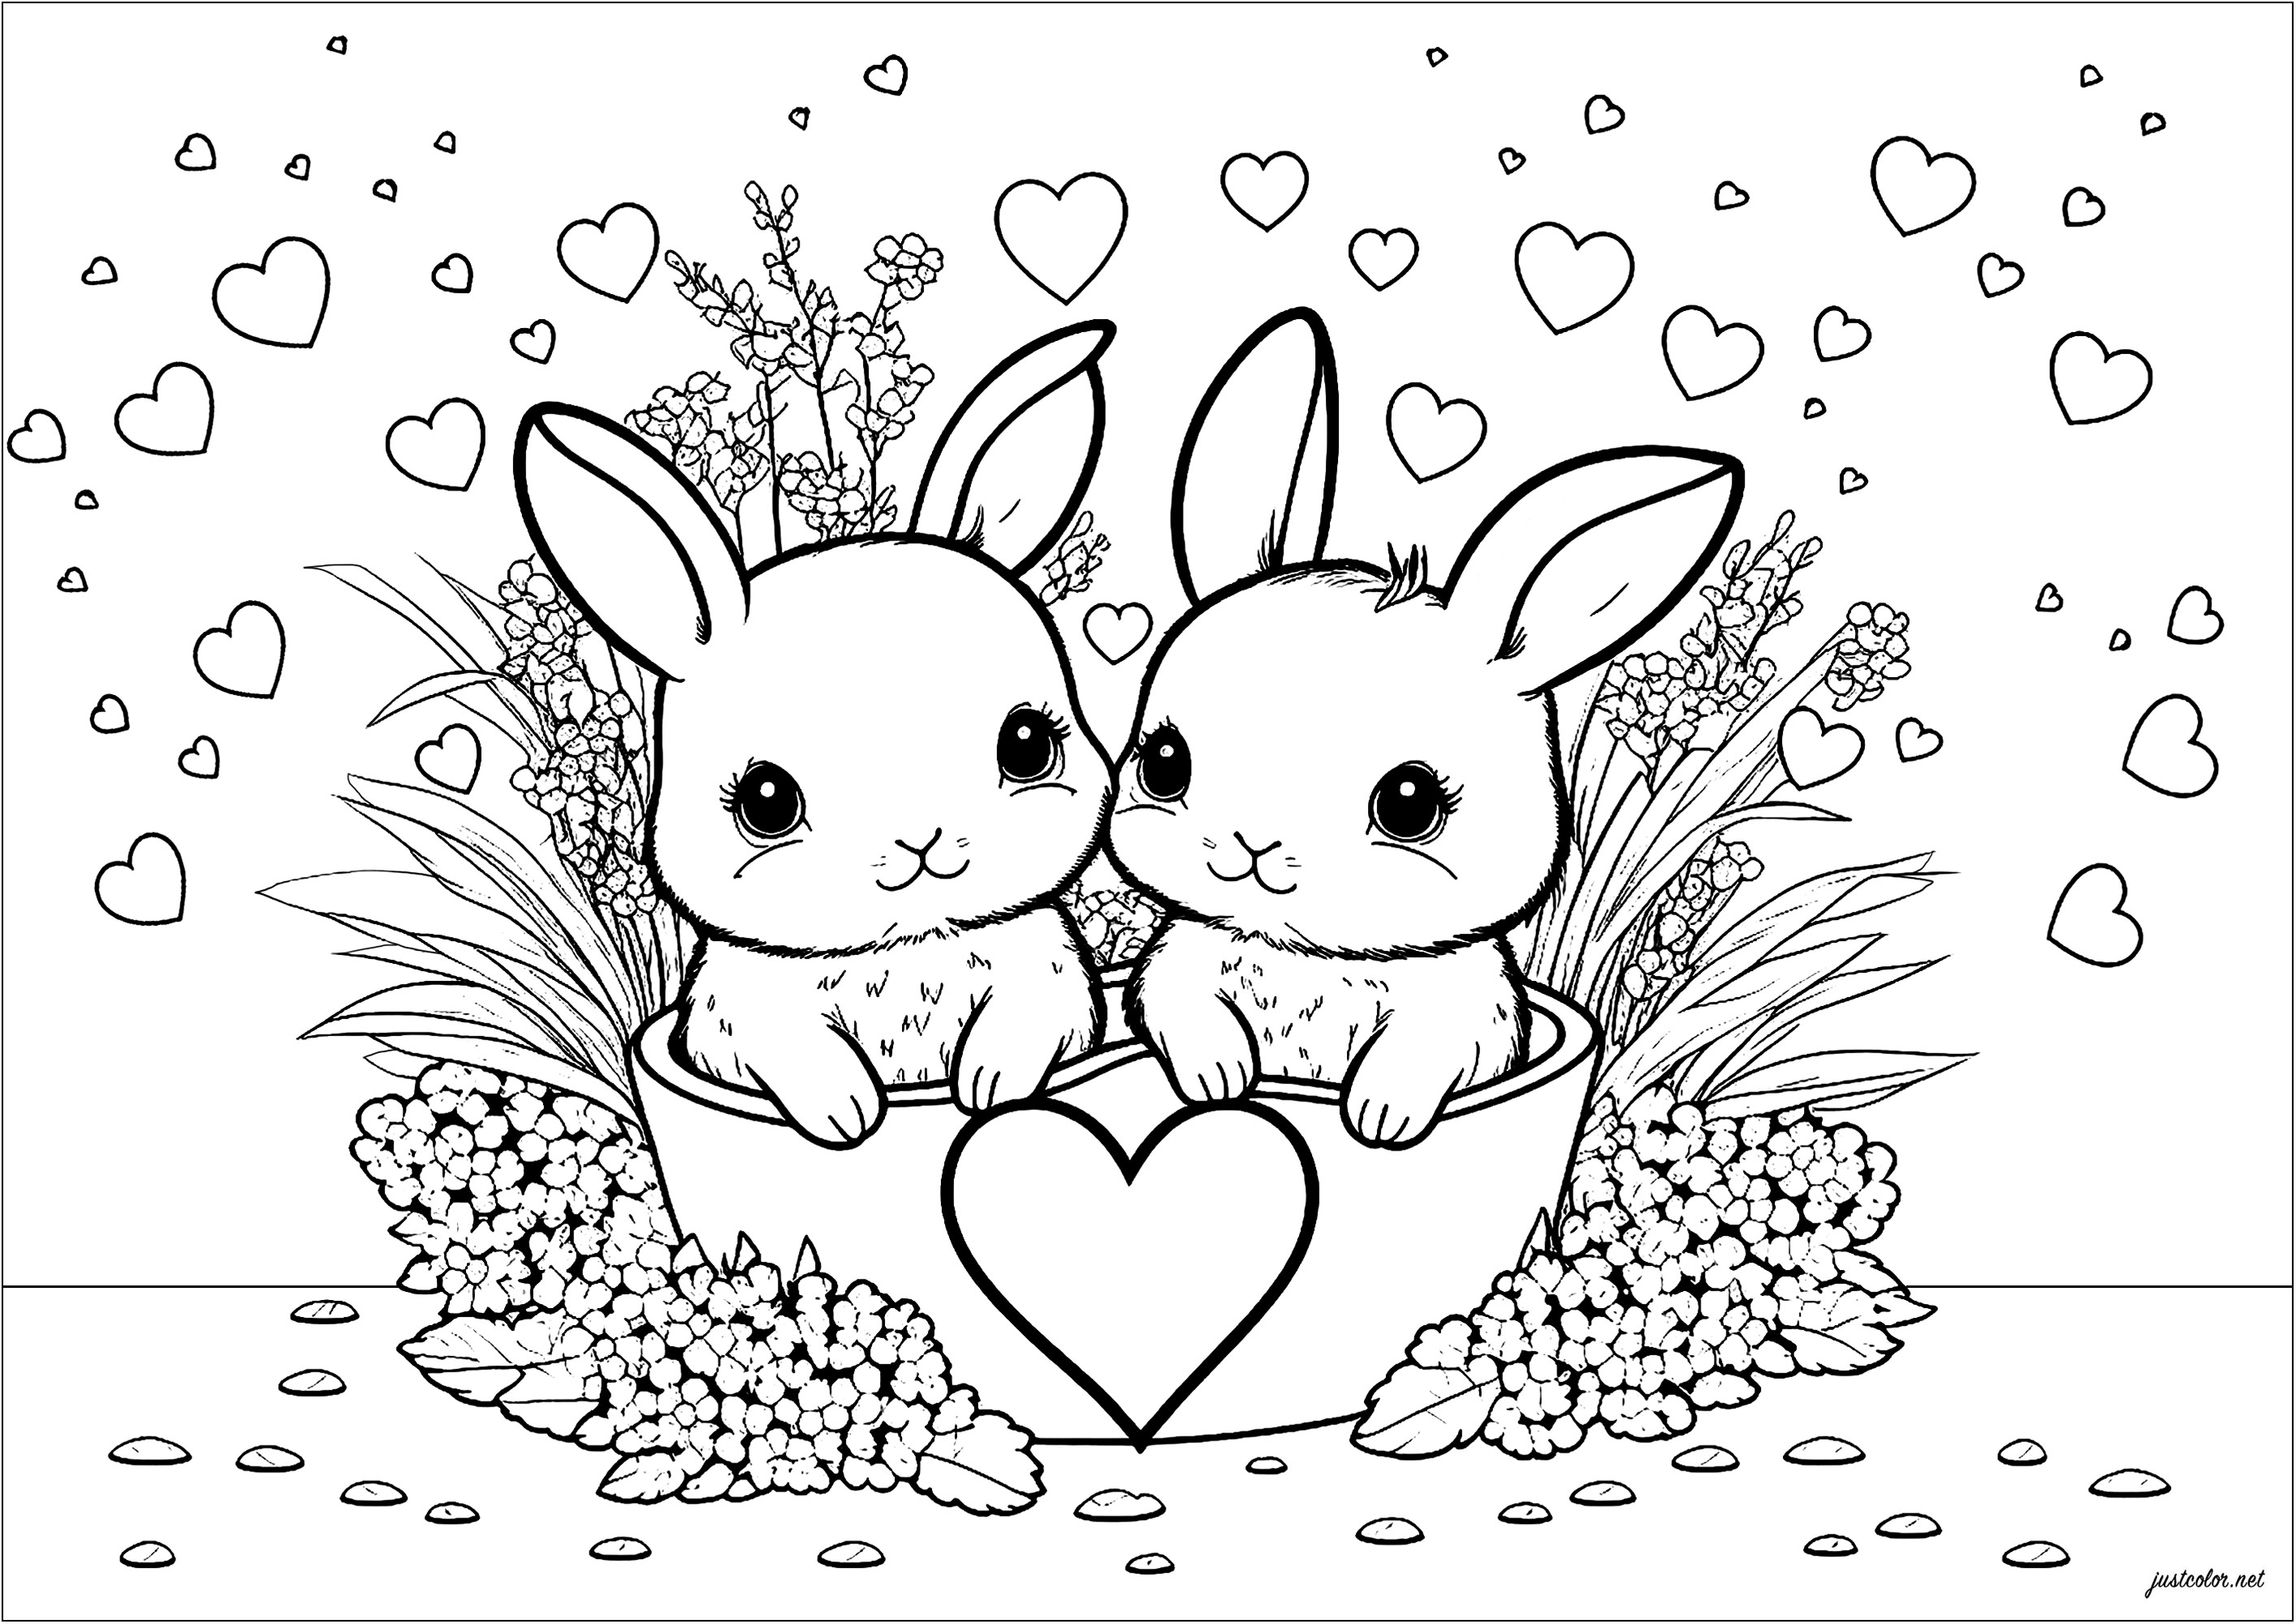 Sencilla página para colorear con dos conejos y muchos corazones. Esta página para colorear es muy tierna e infantil. En ella aparecen dos conejitos rodeados de un montón de corazones de colores. Los conejitos son muy expresivos y sus orejas grandes y suaves.